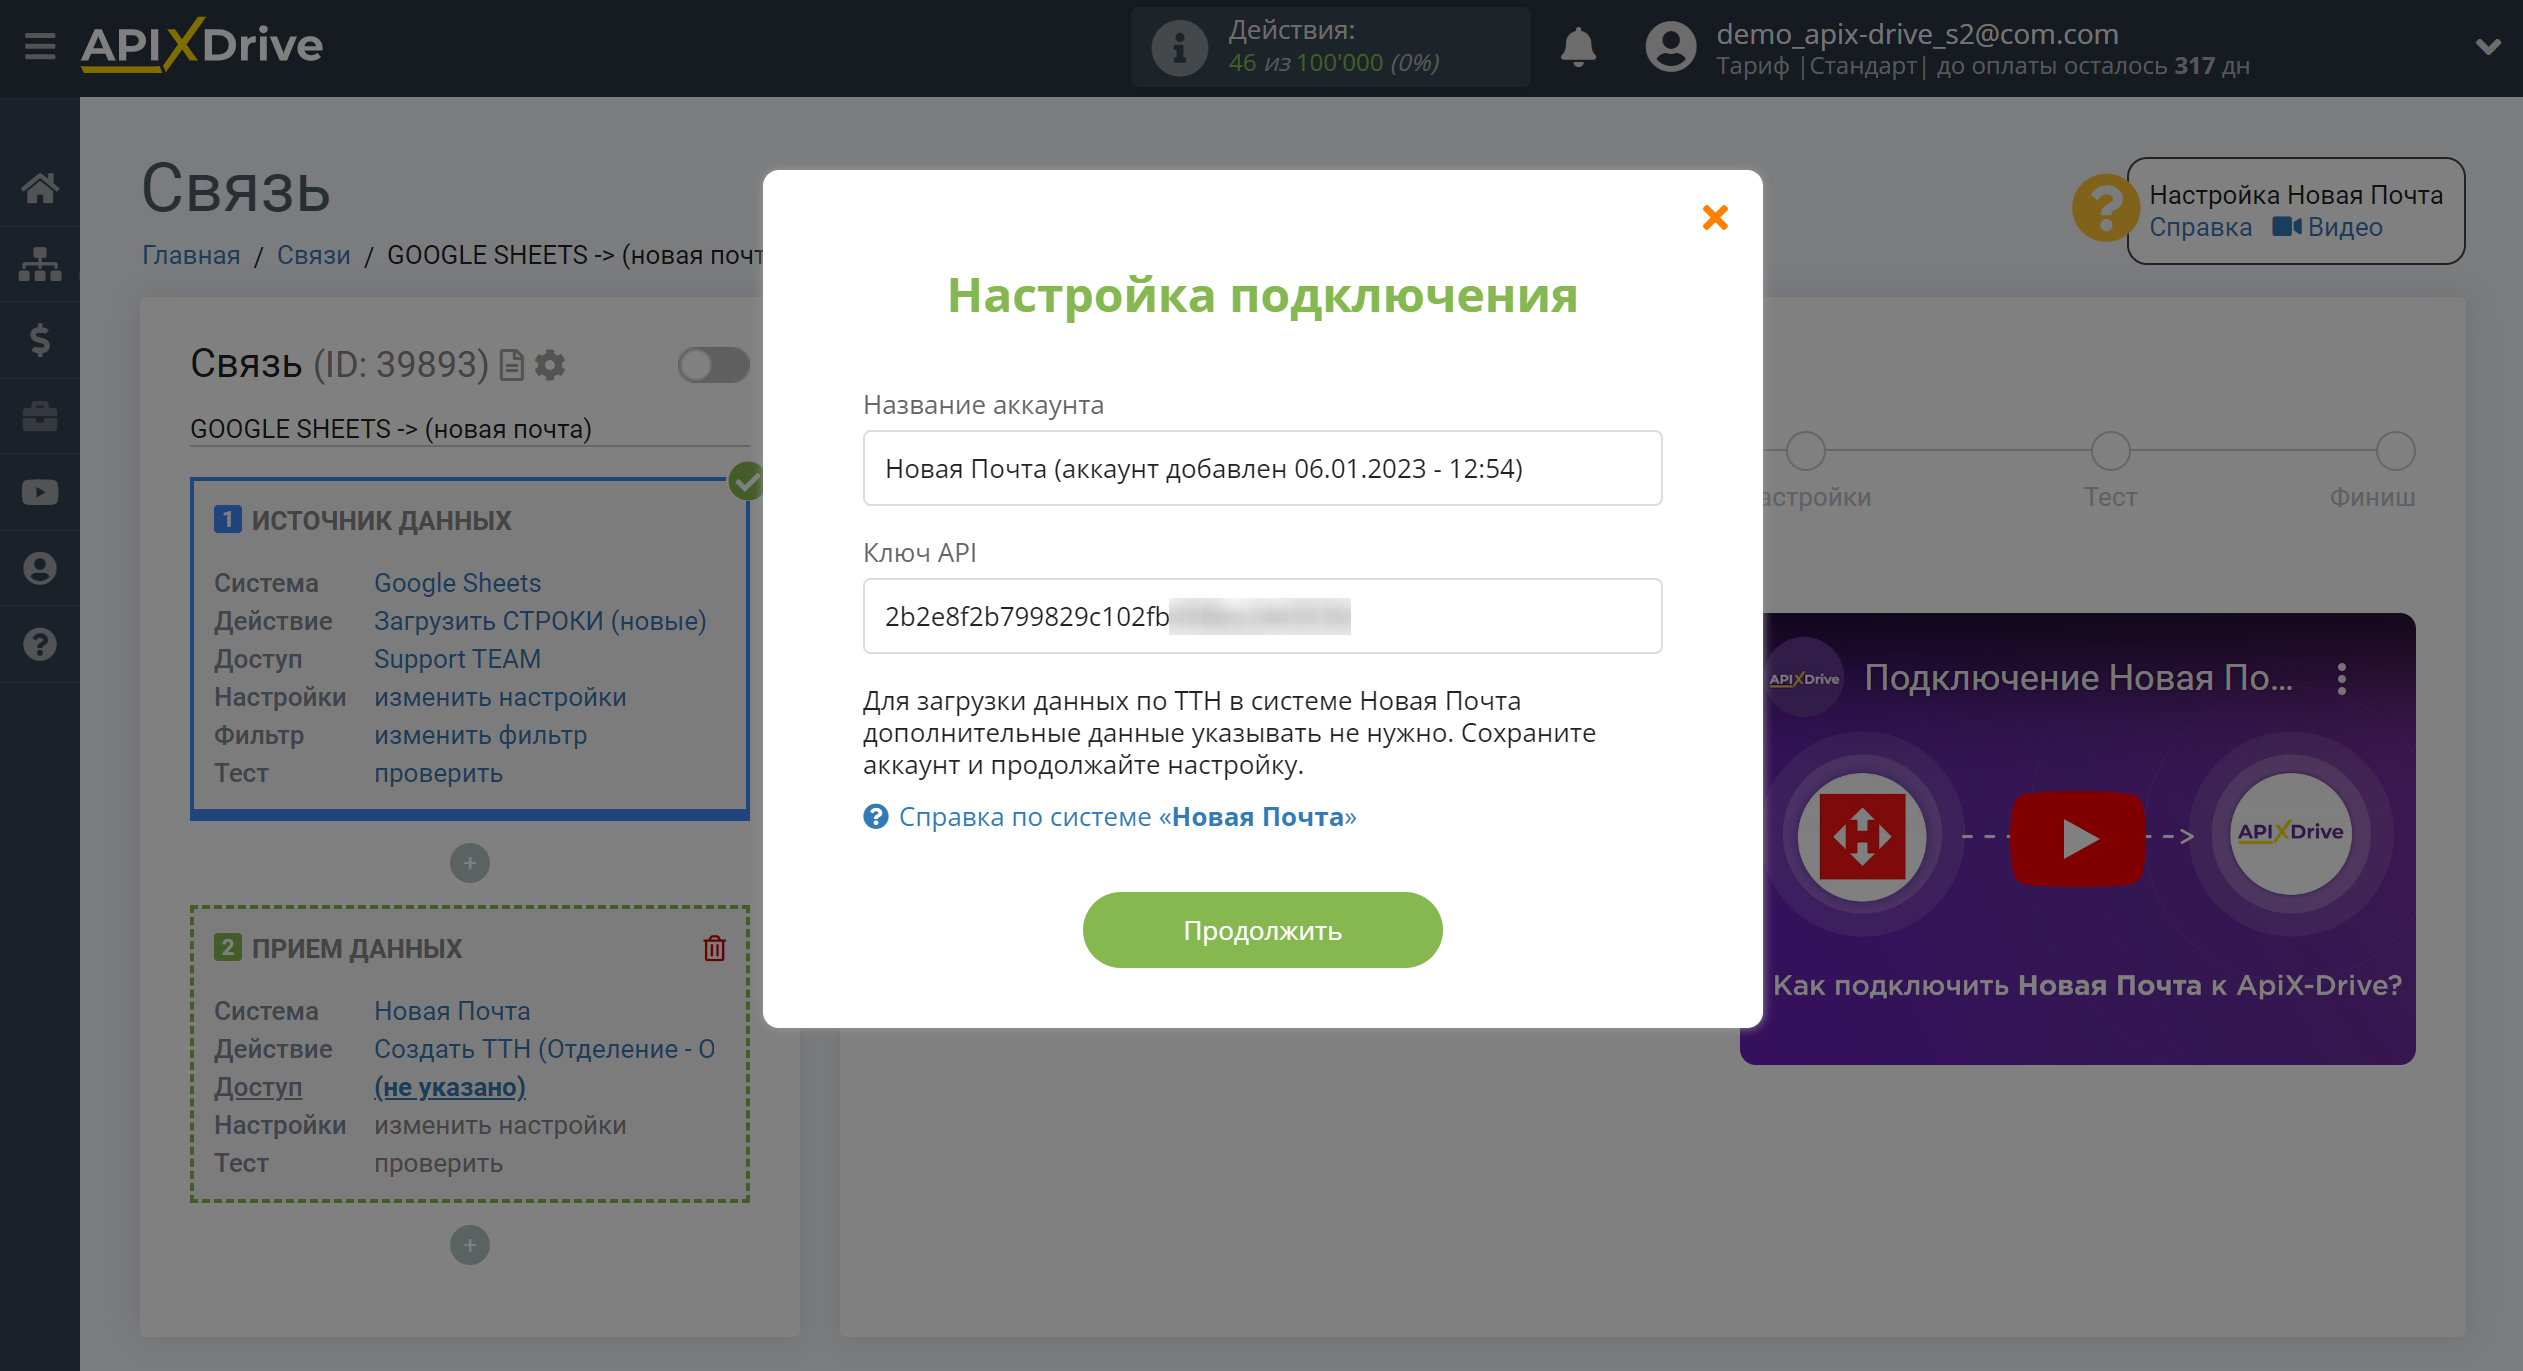 Настройка Приема данных в Новая Почта | Подключение аккаунта